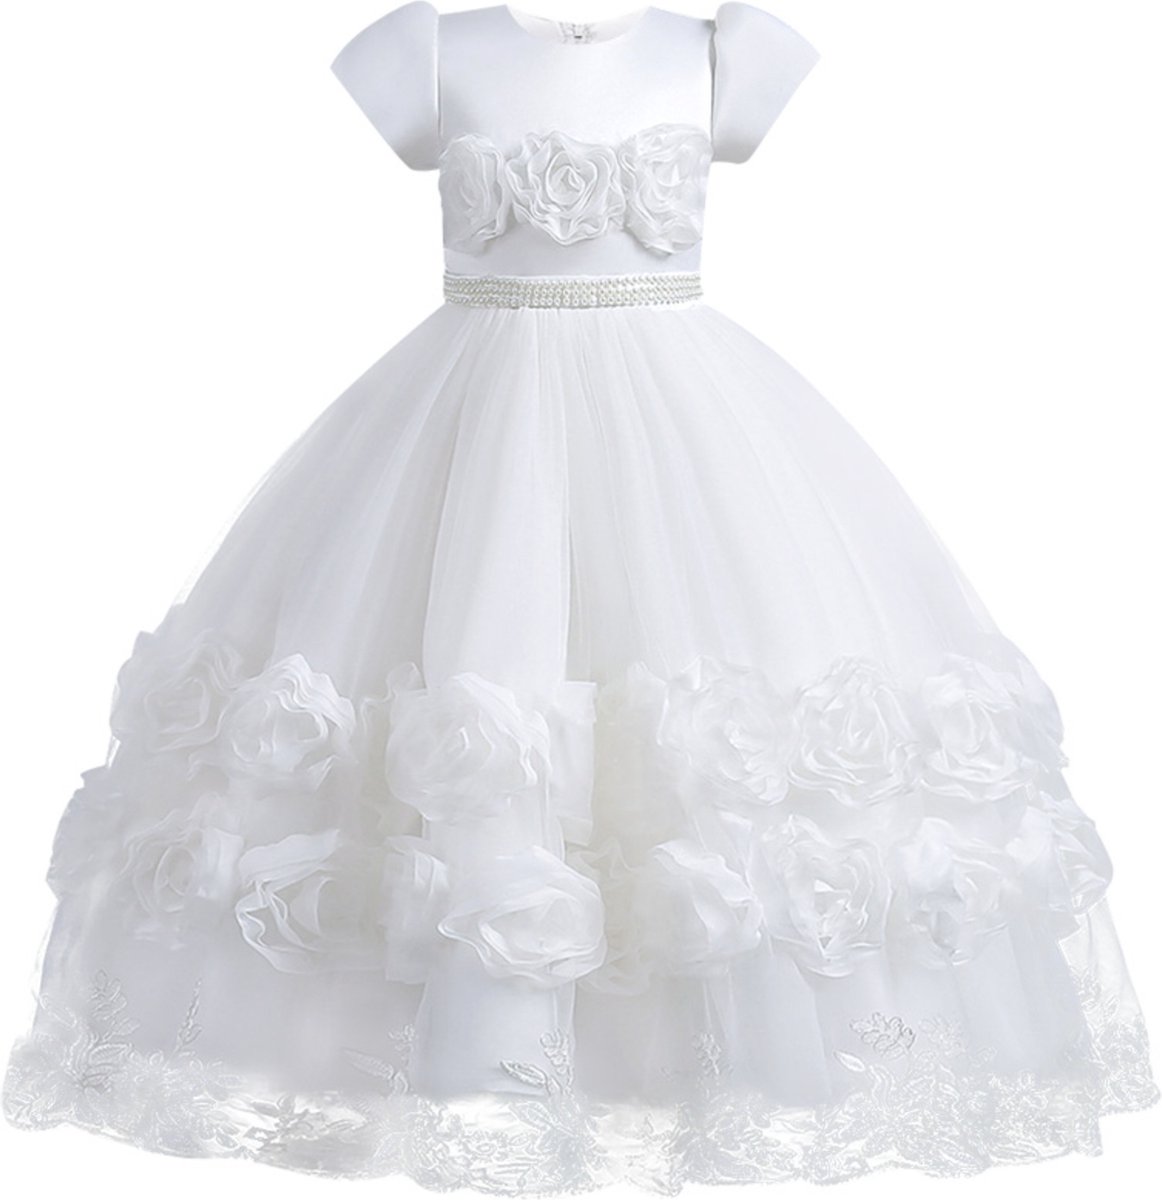 Feestjurk meisje - bruidsmeisjes jurken - Het Betere Merk - 146/152 (150) - communie jurk - bruidsmeisjes jurken voor kinderen - Prinsessenjurk meisje - cadeau meisje